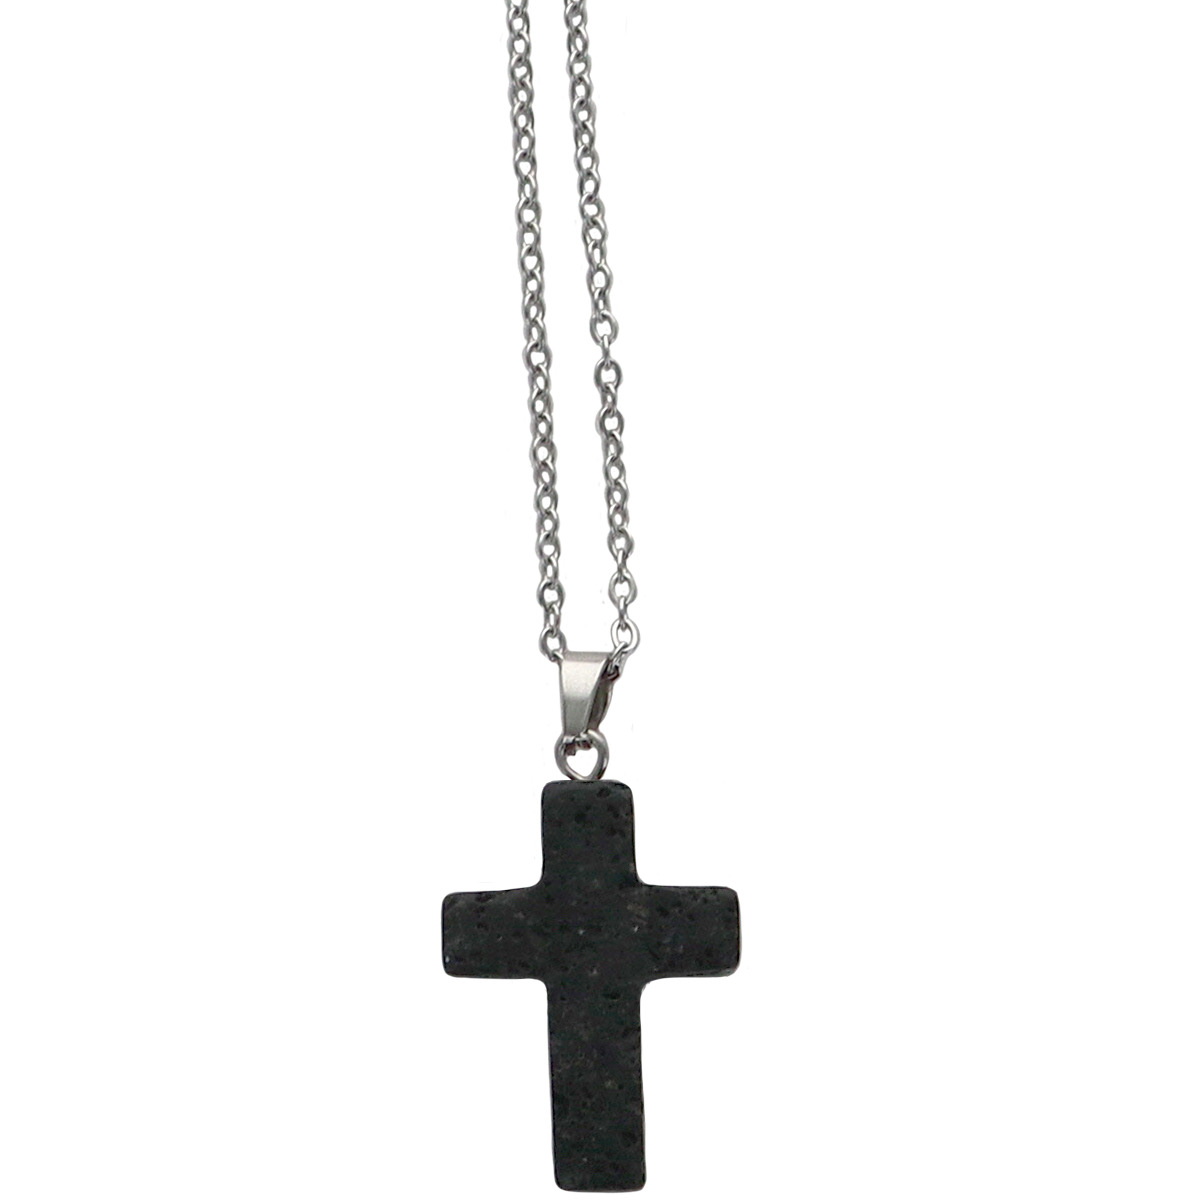 Collier avec croix en pierre naturelle H 2.4 cm sur chaine maille forçat en acier inoxydable L. 45 cm ajustable. 